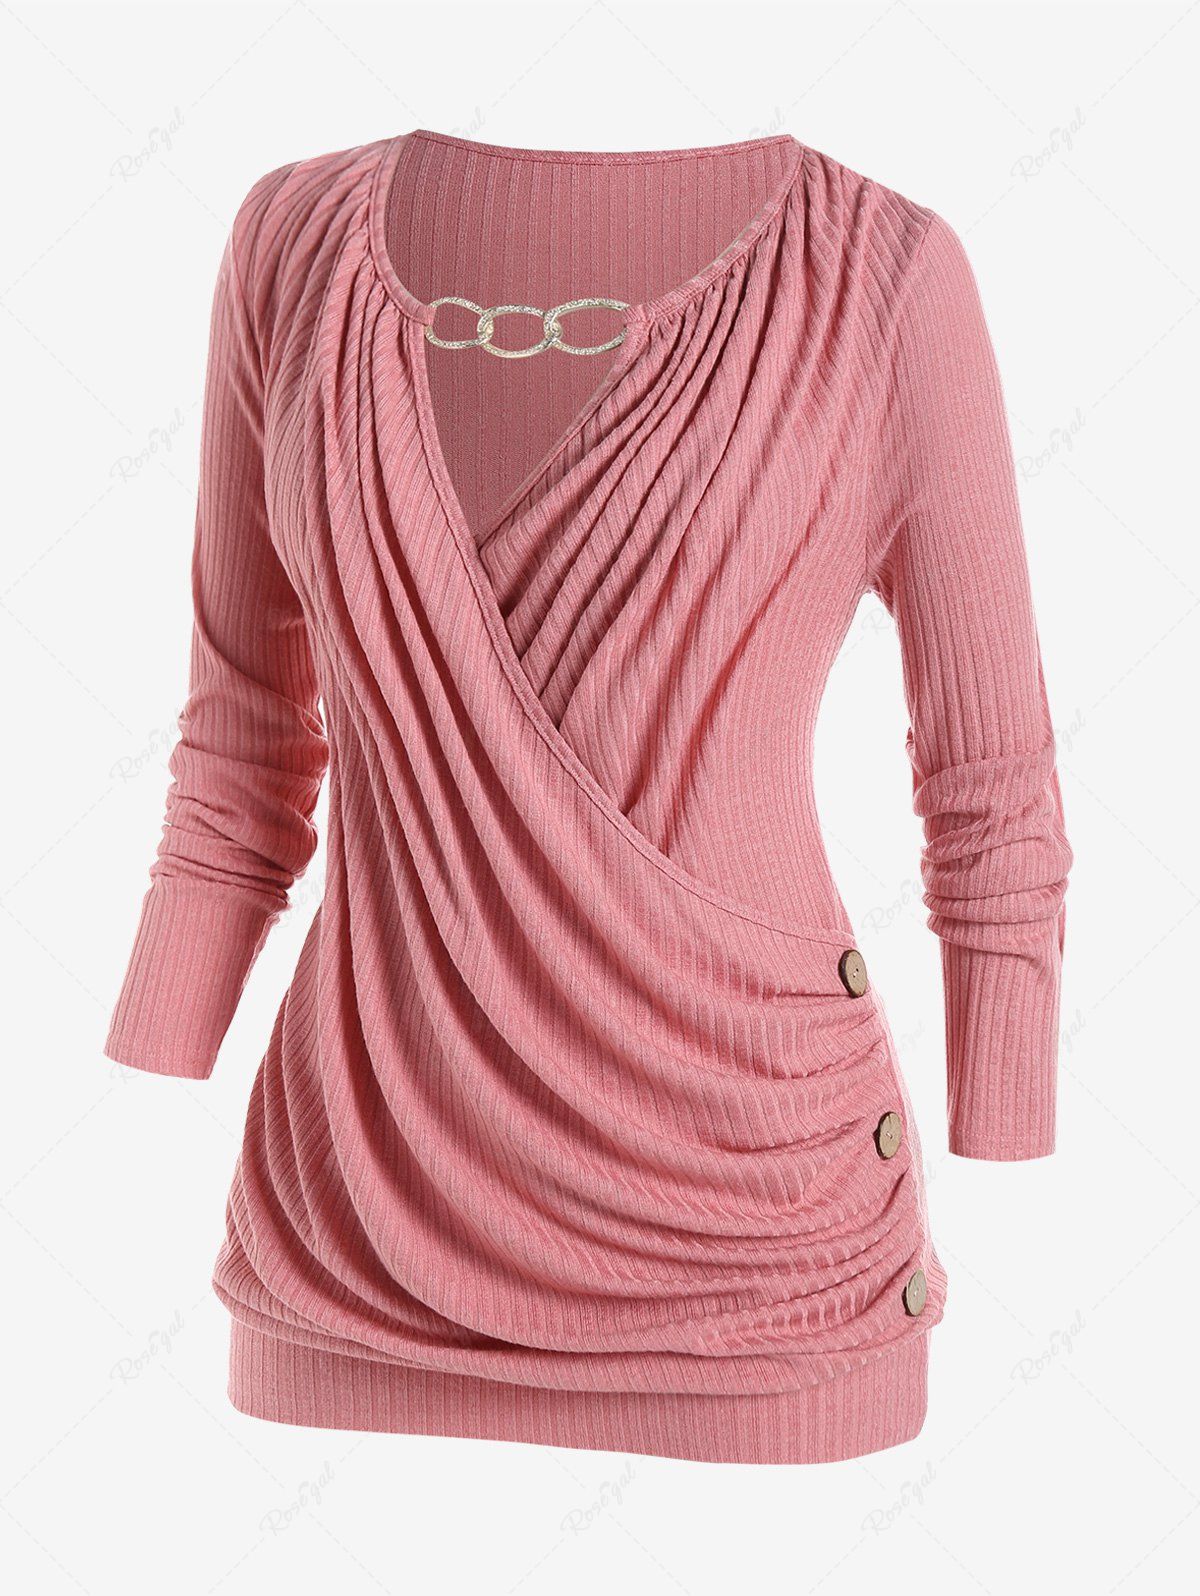 T-shirt Drapé Chaîne Superposé de Grande Taille avec Trou de Serrure Rose clair 1X | US 14-16